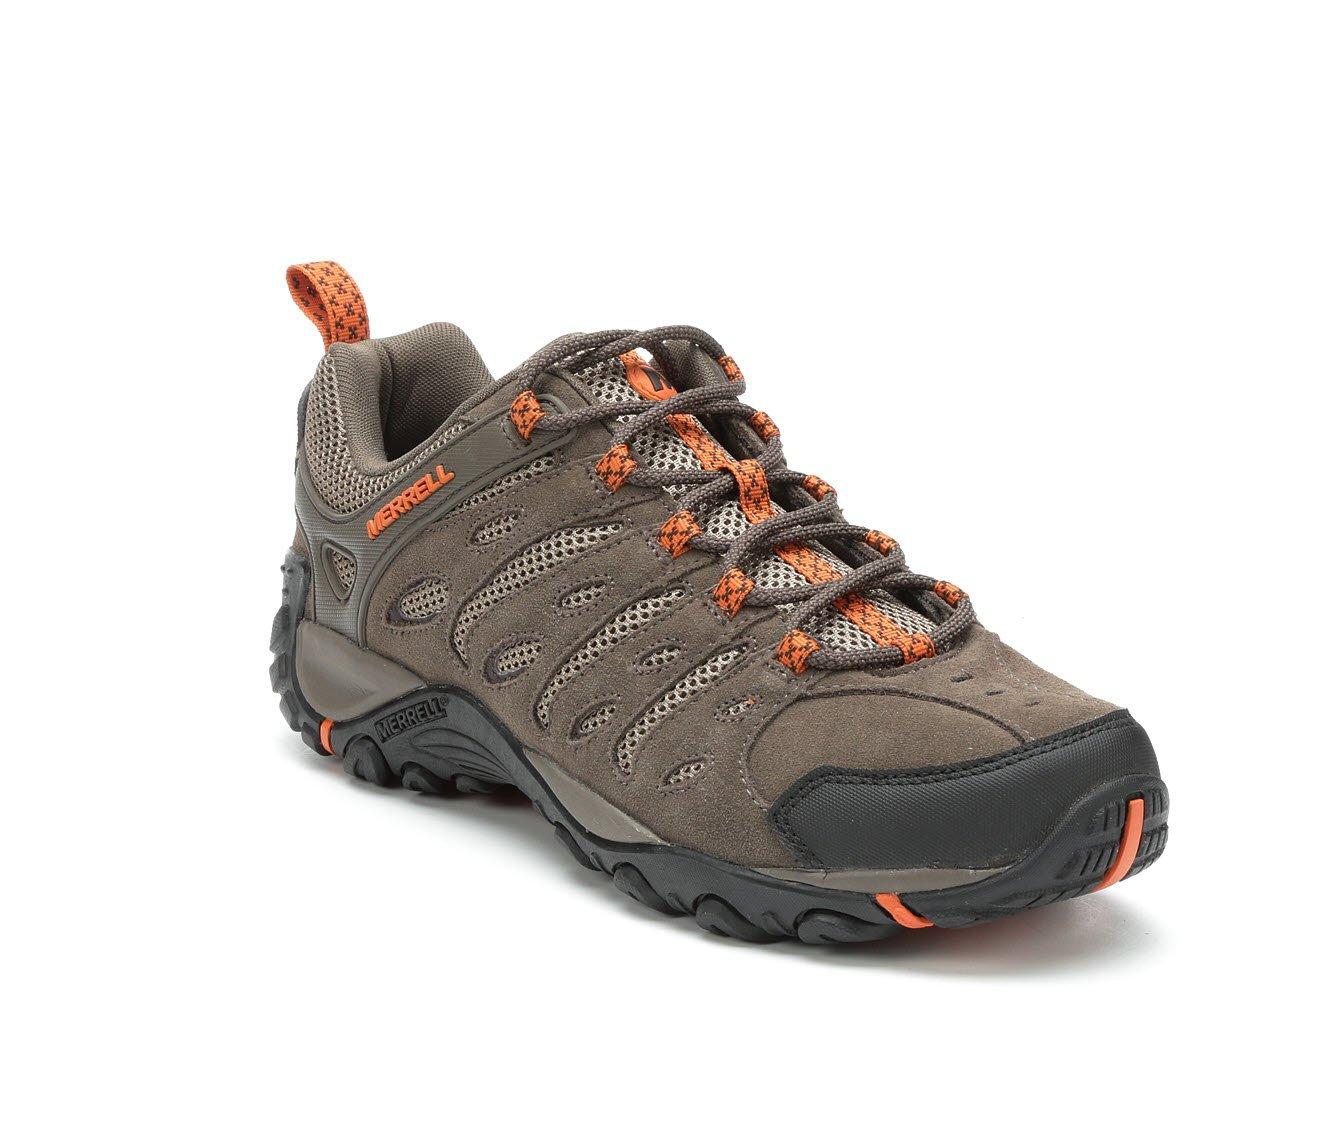 Men's Merrell Crosslander II Hiking Shoes | Shoe Carnival